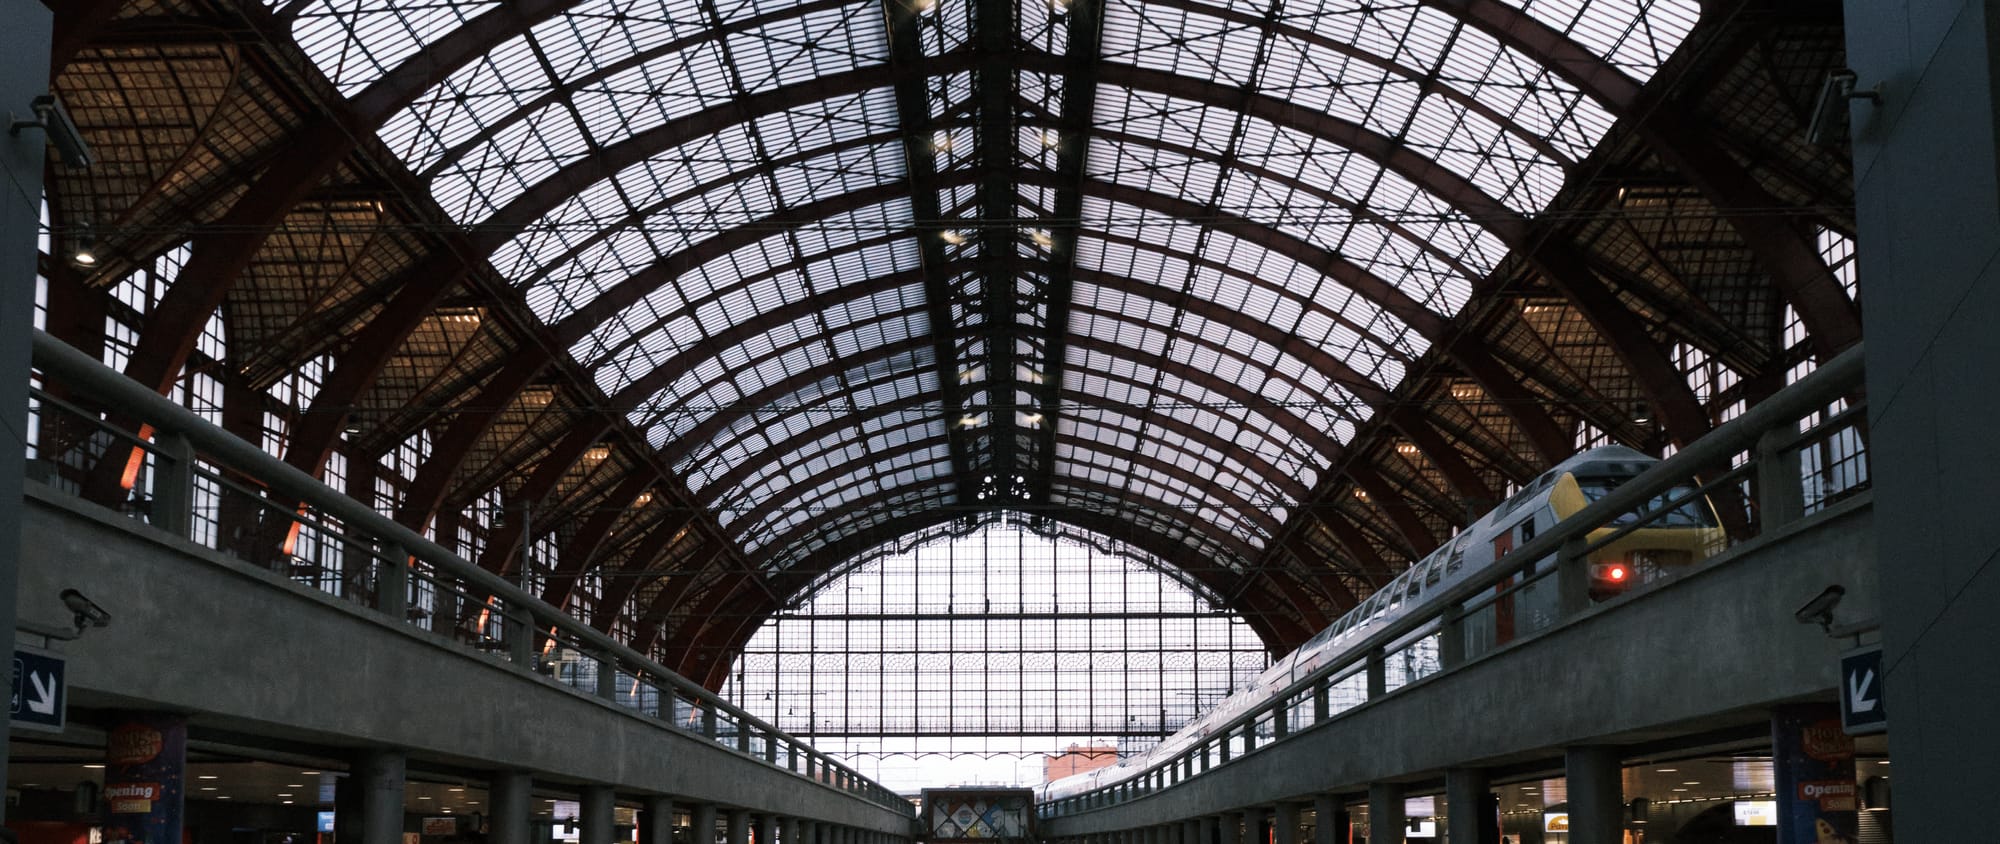 Stations: Antwerpen